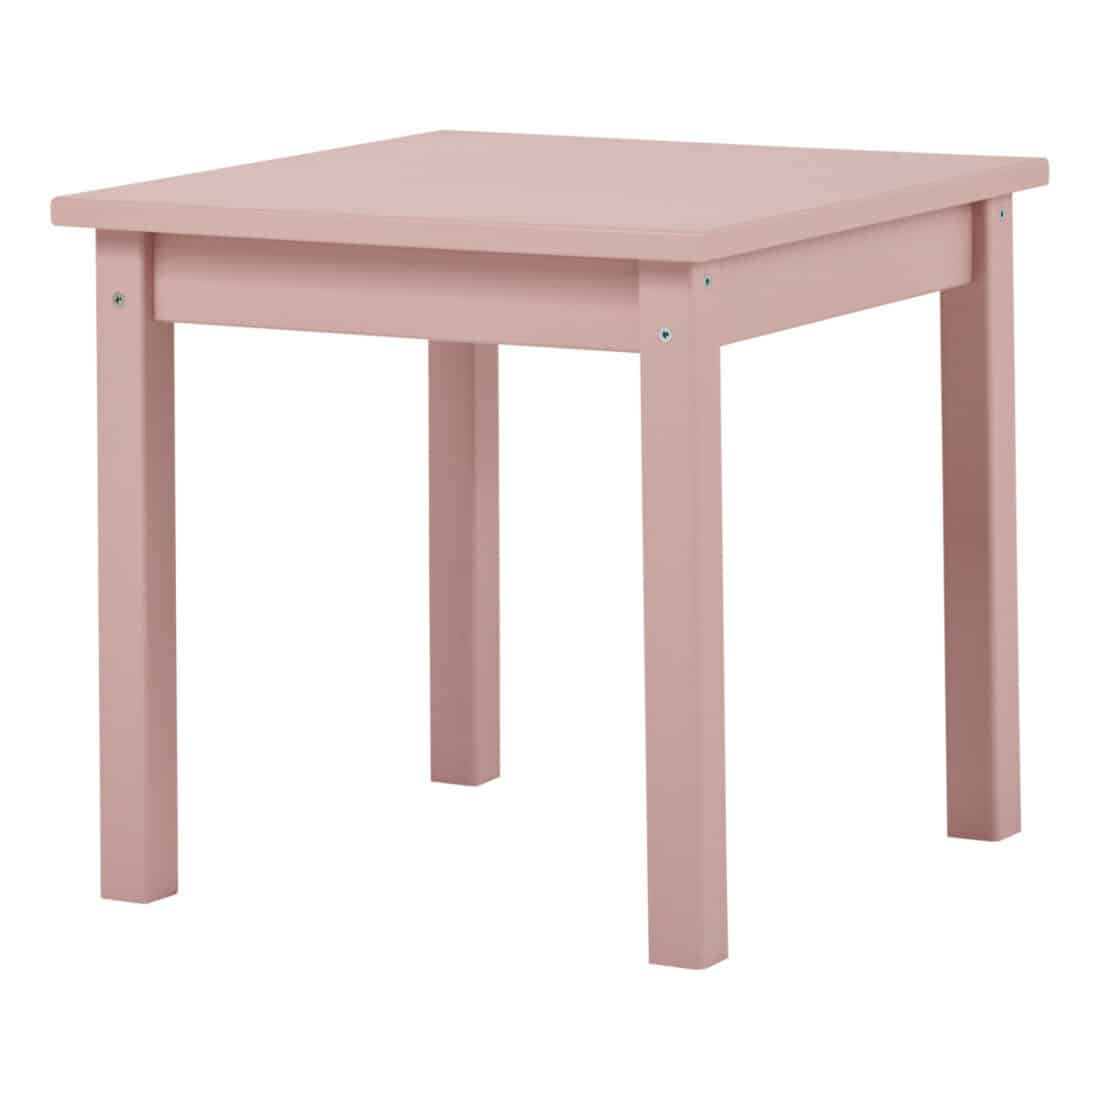 Vaaleanpunainen lasten pöytä Hoppekids-merkiltä.